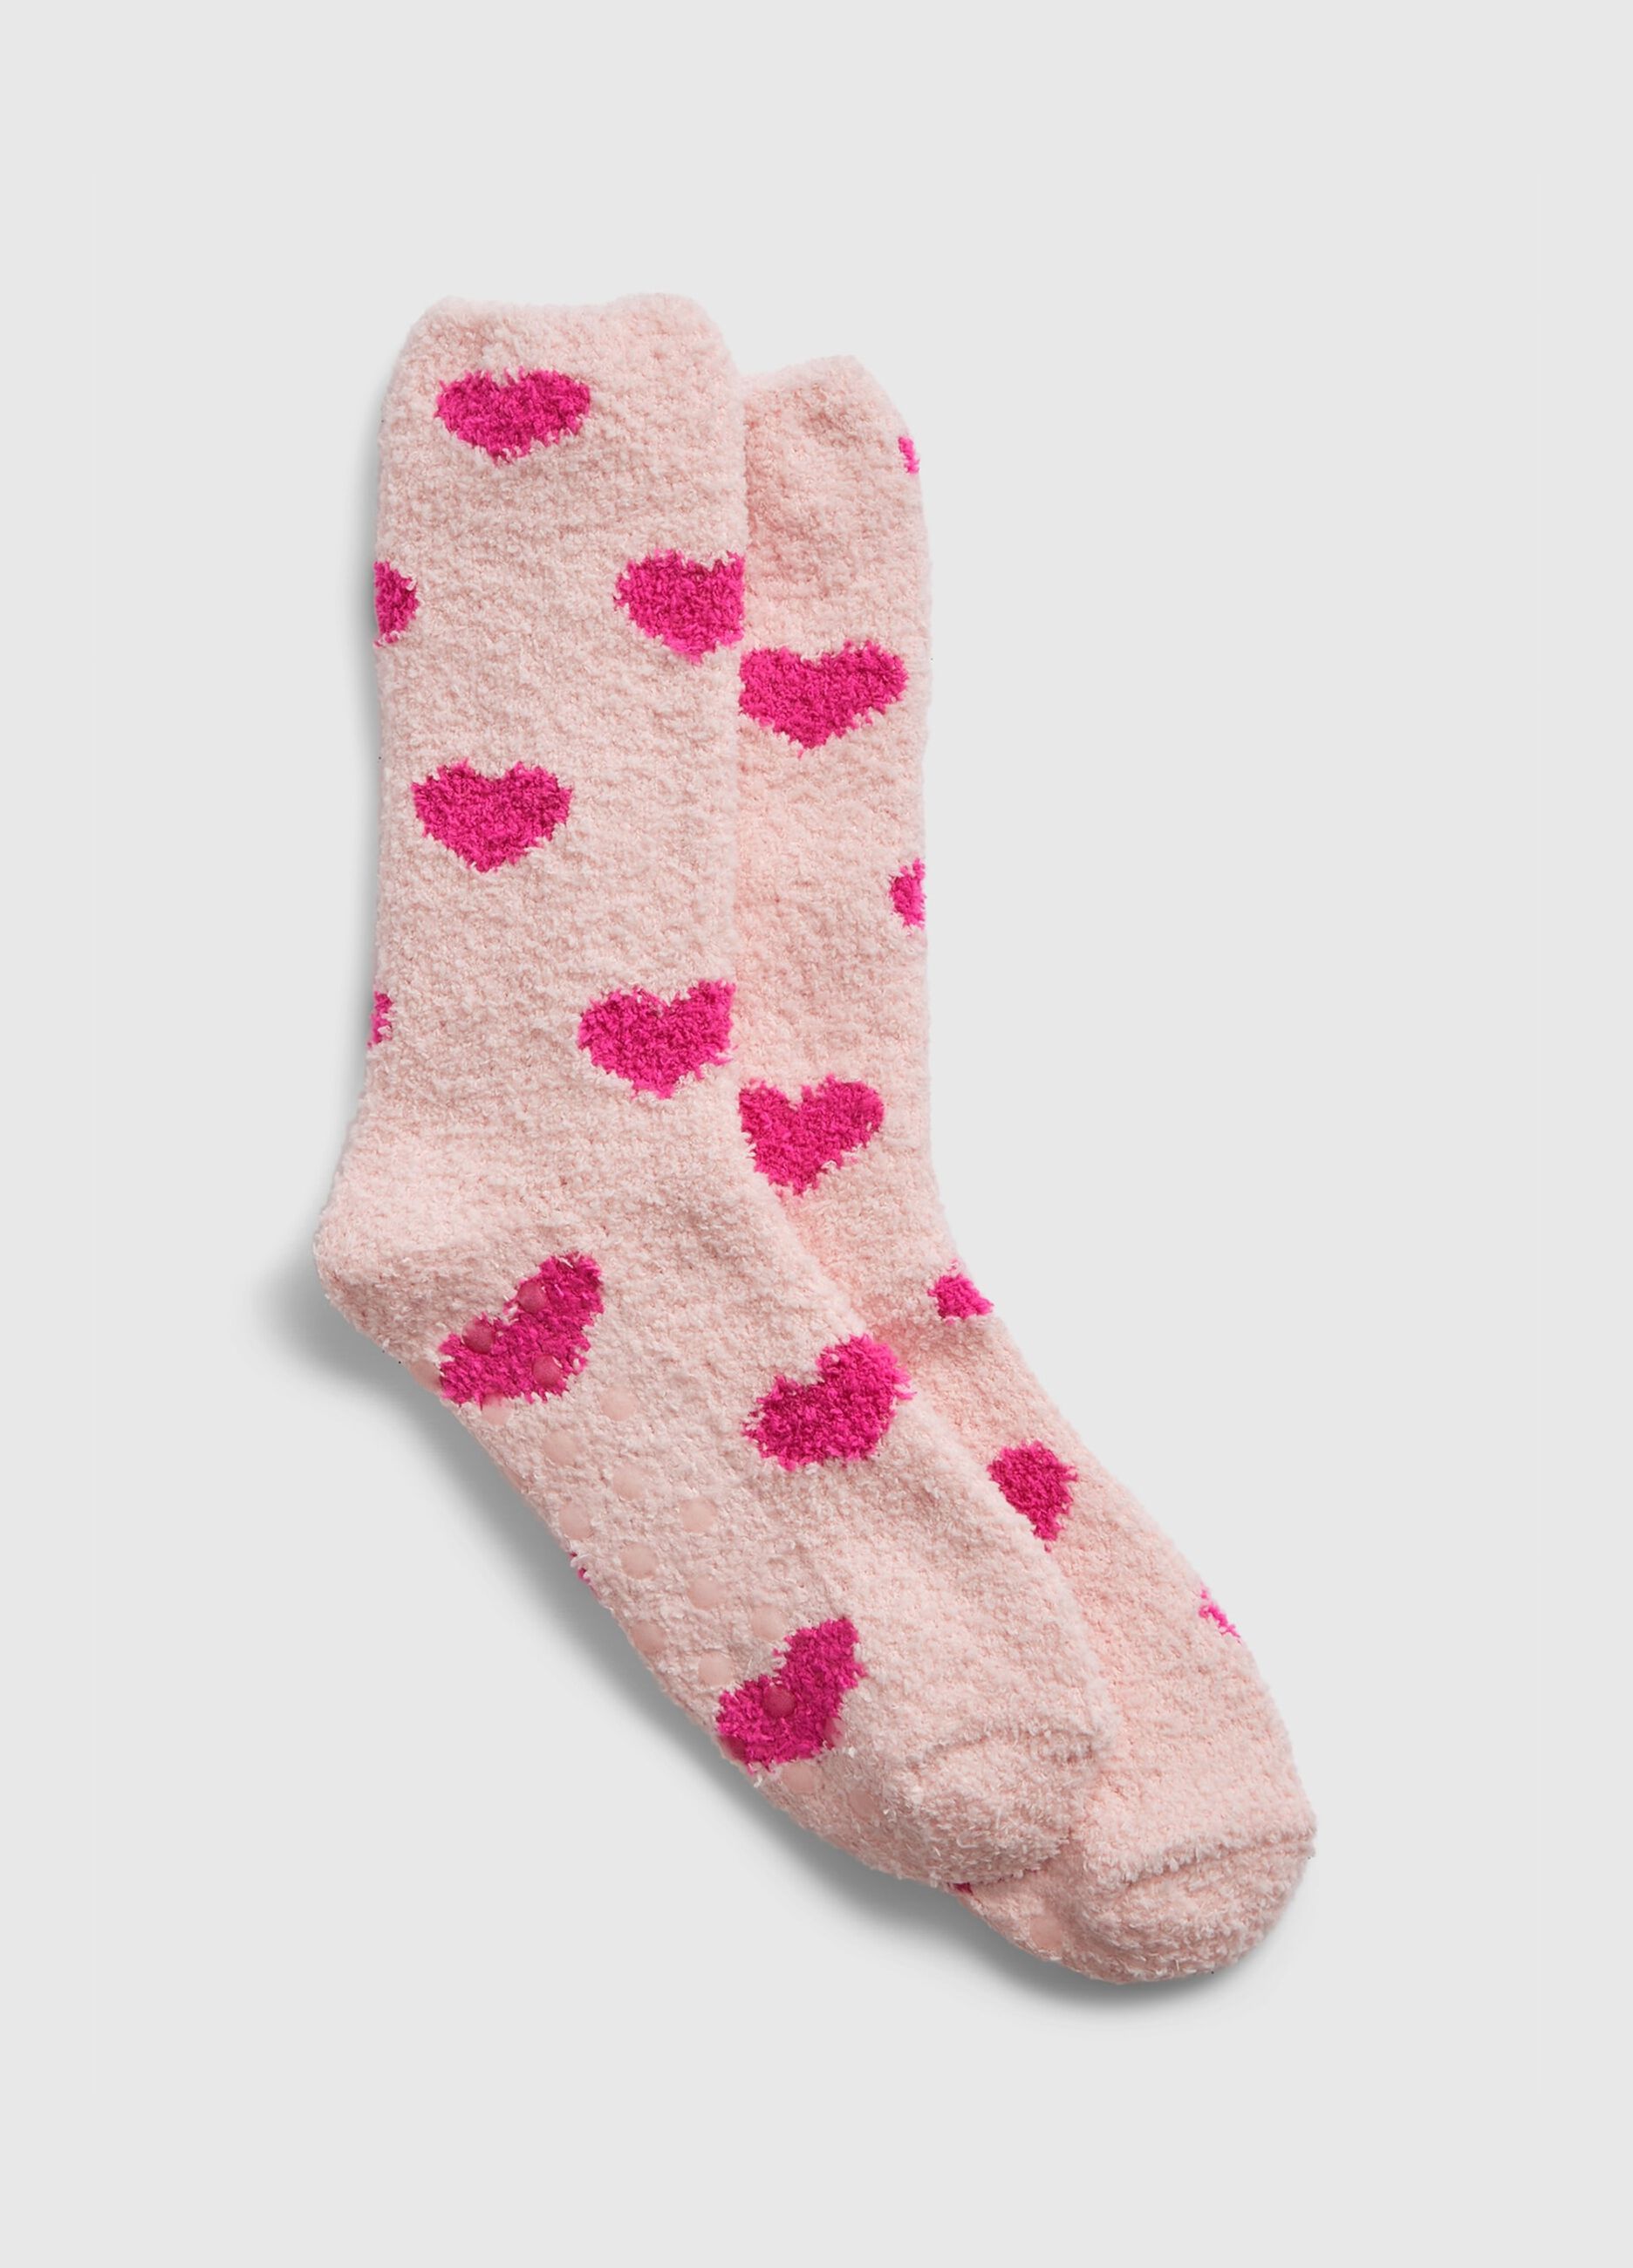 Slipper socks with heart pattern